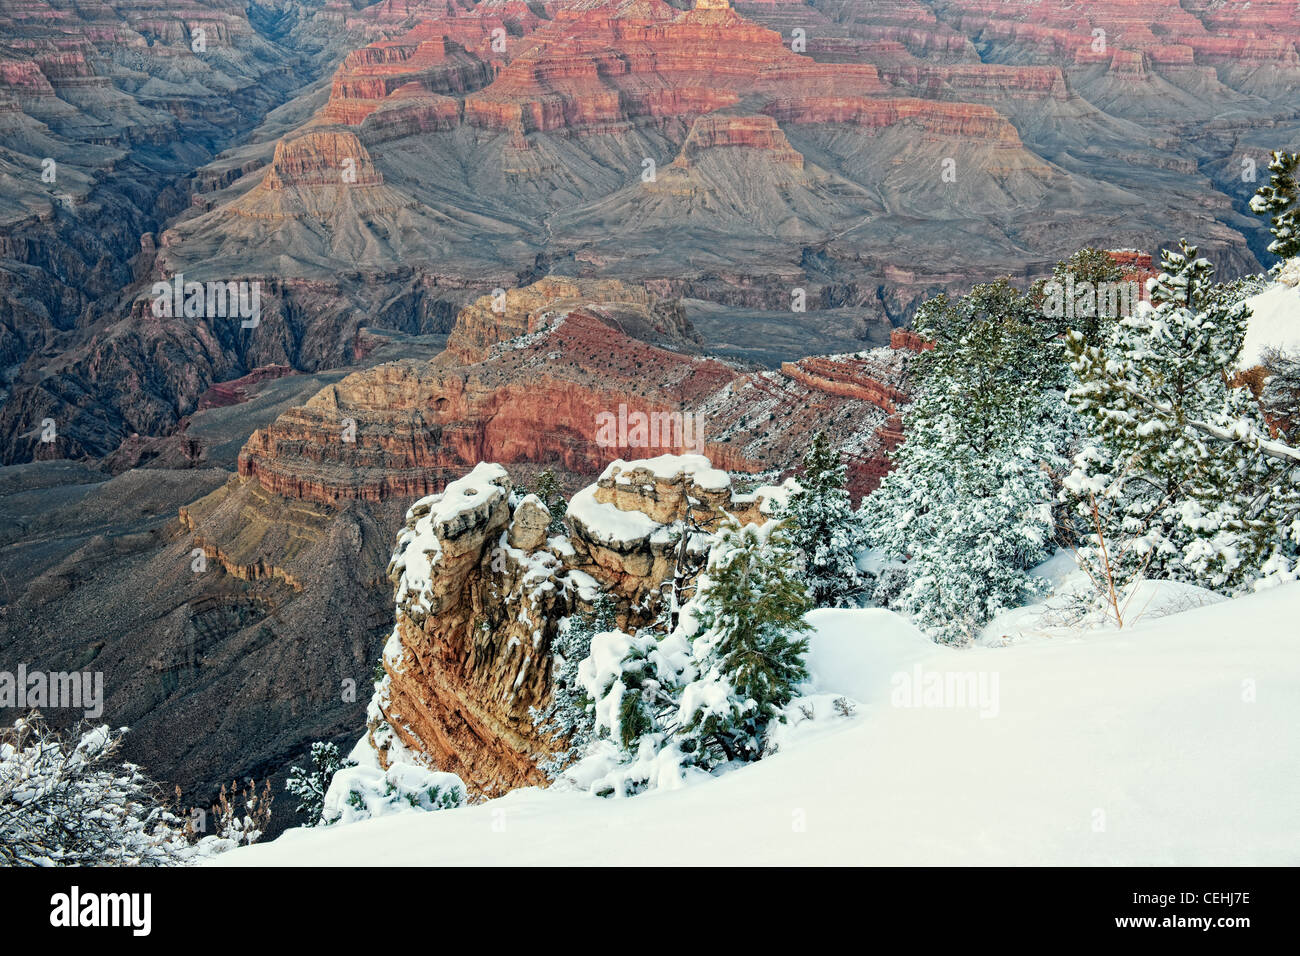 Bürgerlichen Dämmerung verstärkt die Farben von Arizona Grand Canyon National Park mit Schneefall entlang des South Rim am Mather Point. Stockfoto